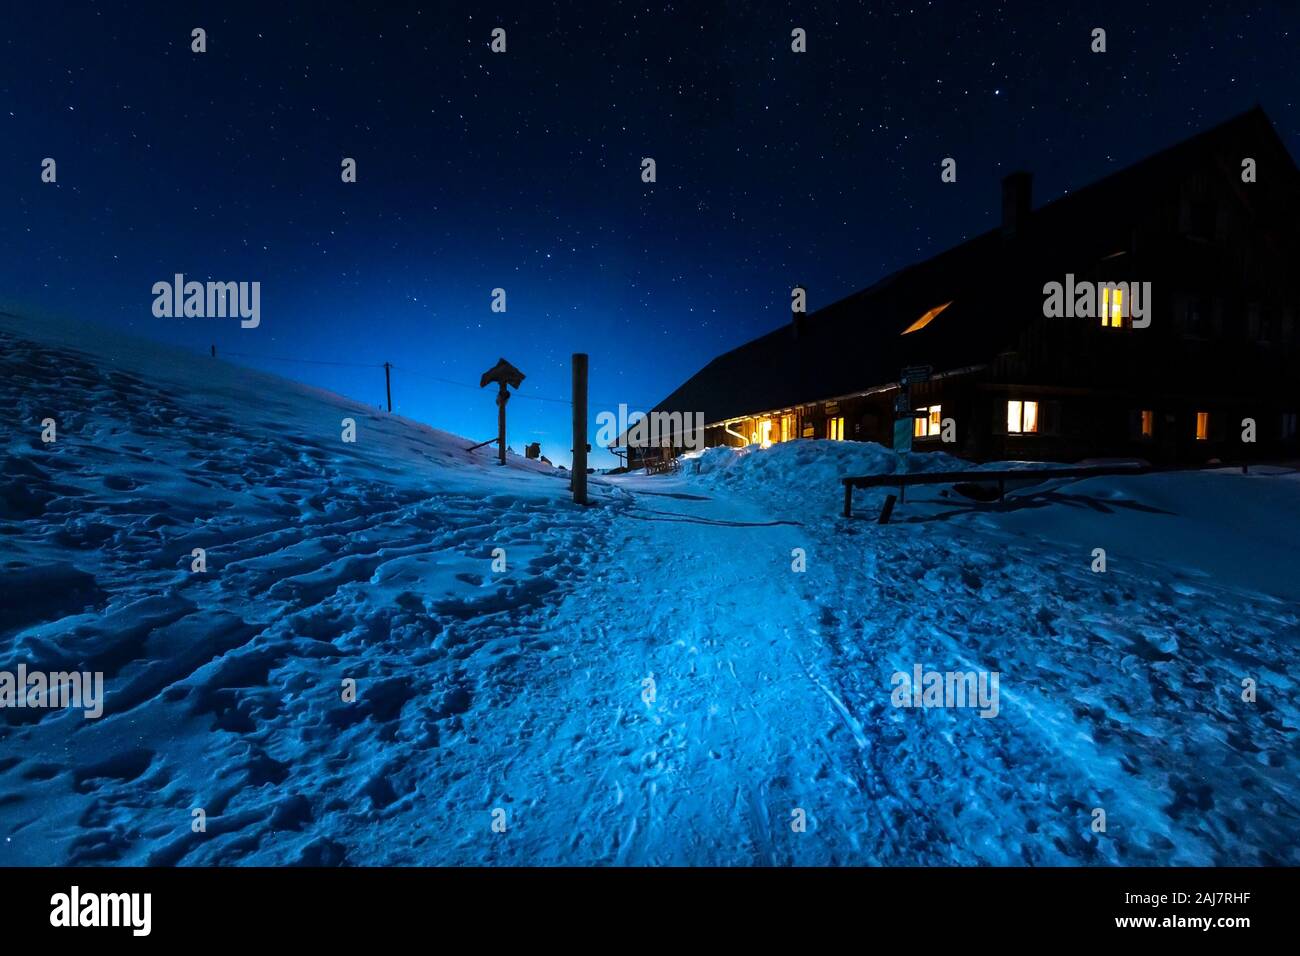 Germany, Bavaria, Alpes Allgaeu, scène de nuit d'hiver avec l'ancien refuge de montagne Banque D'Images